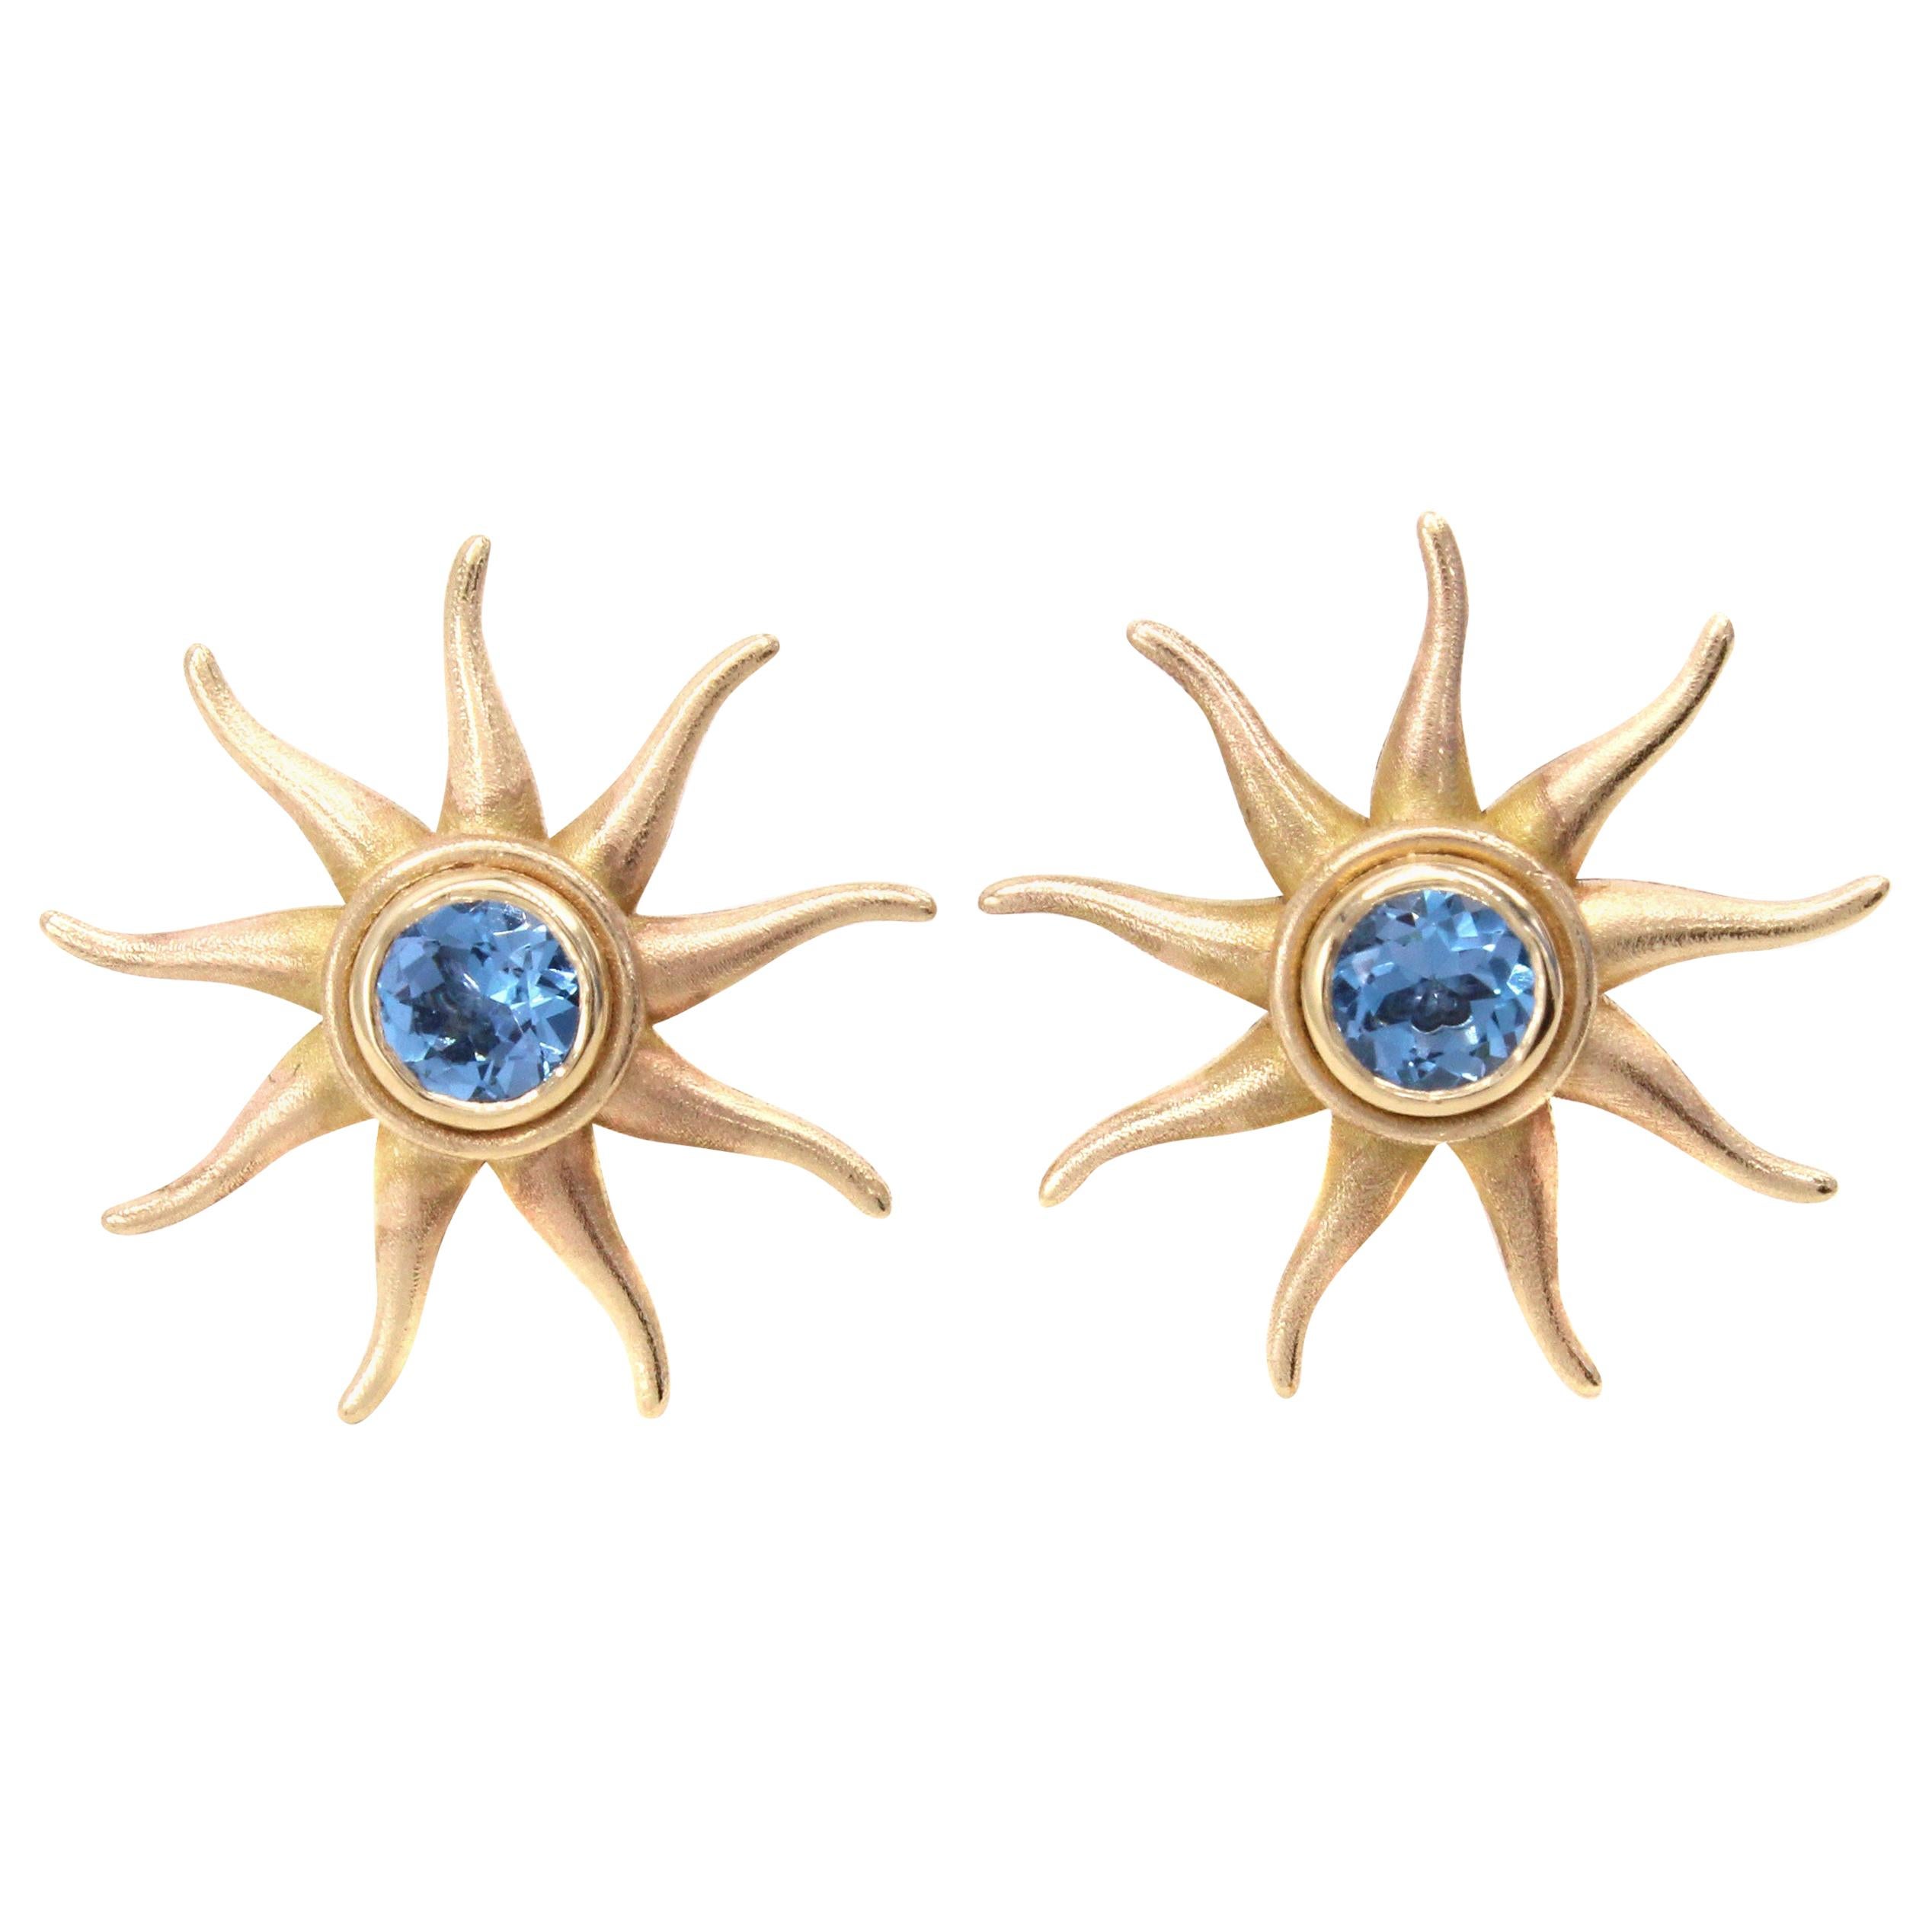 Unsere einzigartigen Sunburst-Ohrringe sind eine aufregende Ergänzung zur Linie der Originaldesigns von Rive Gauche Jewelry und bieten eine neue und aufregende Vielseitigkeit. Diese tragbaren Sunbursts sind lustig und elegant und bieten die perfekte